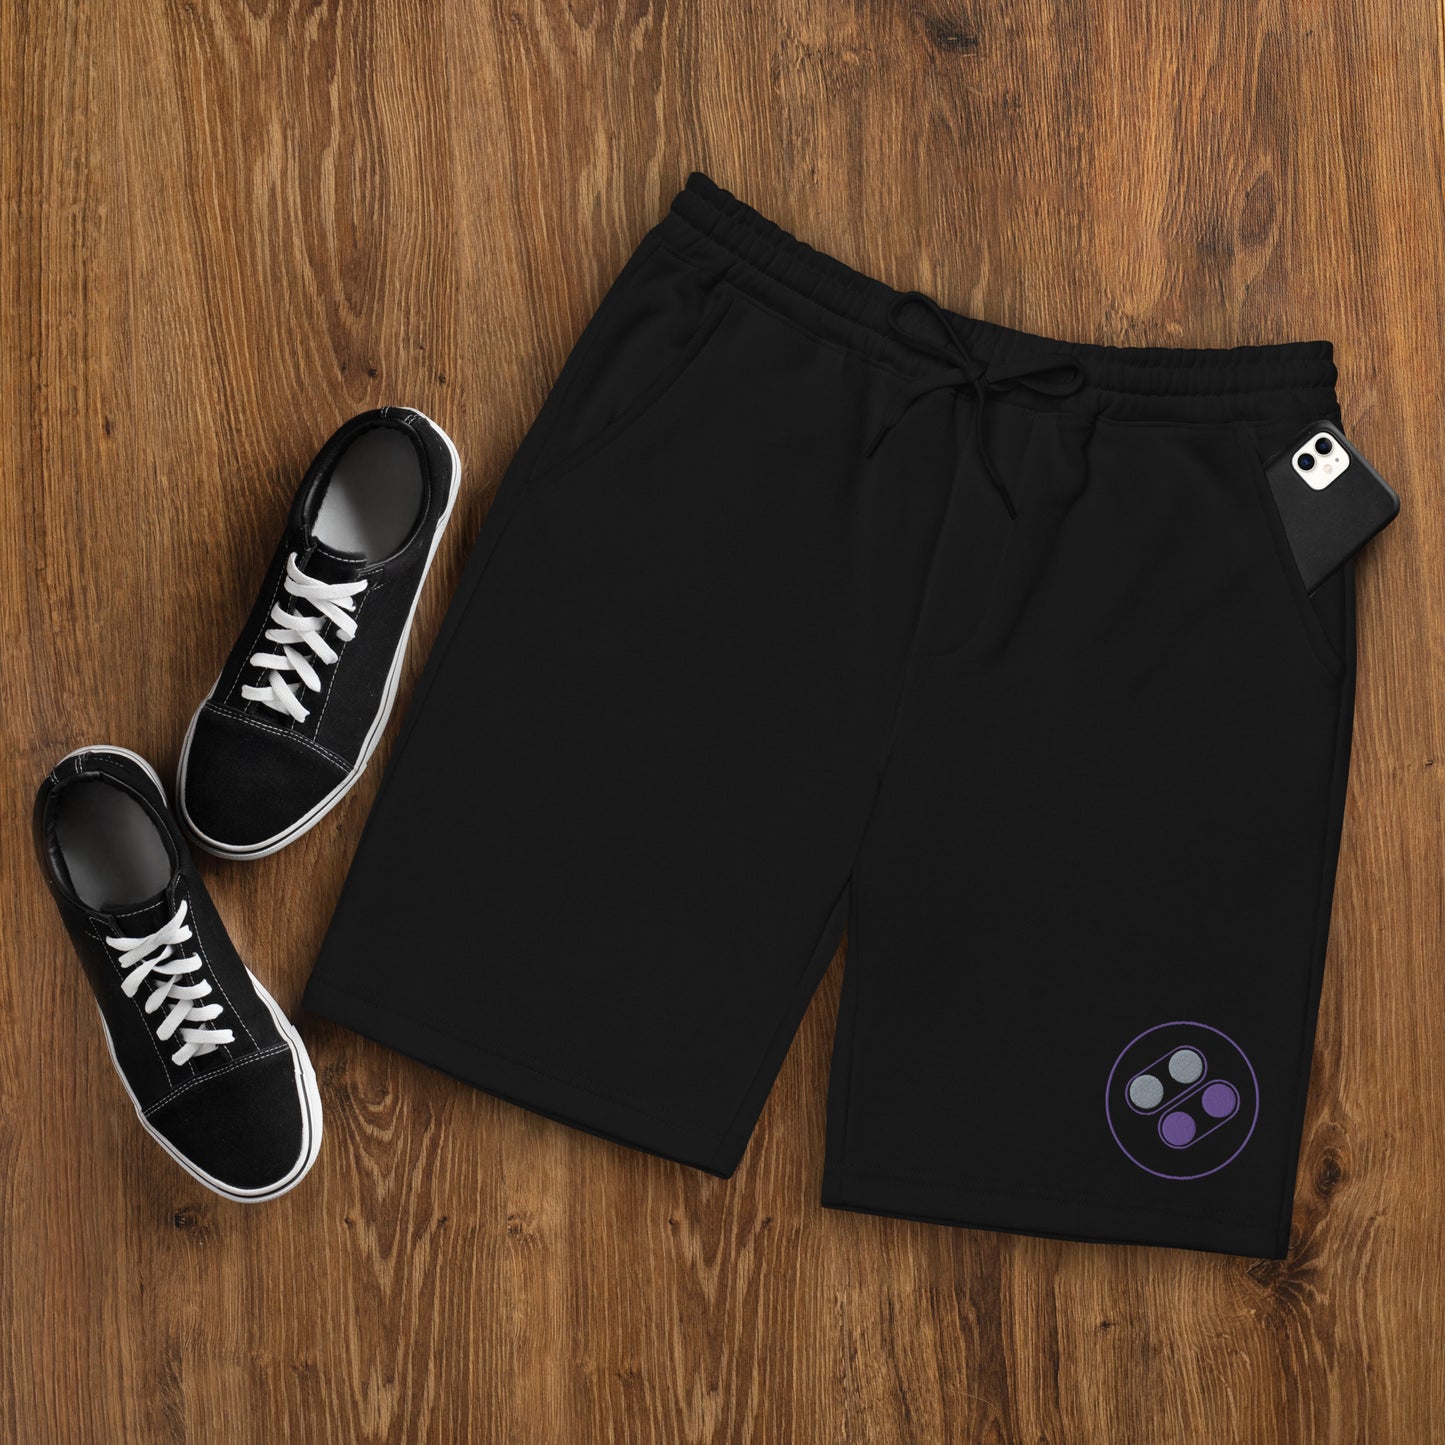 YSUG Mode 7 - Men's fleece shorts